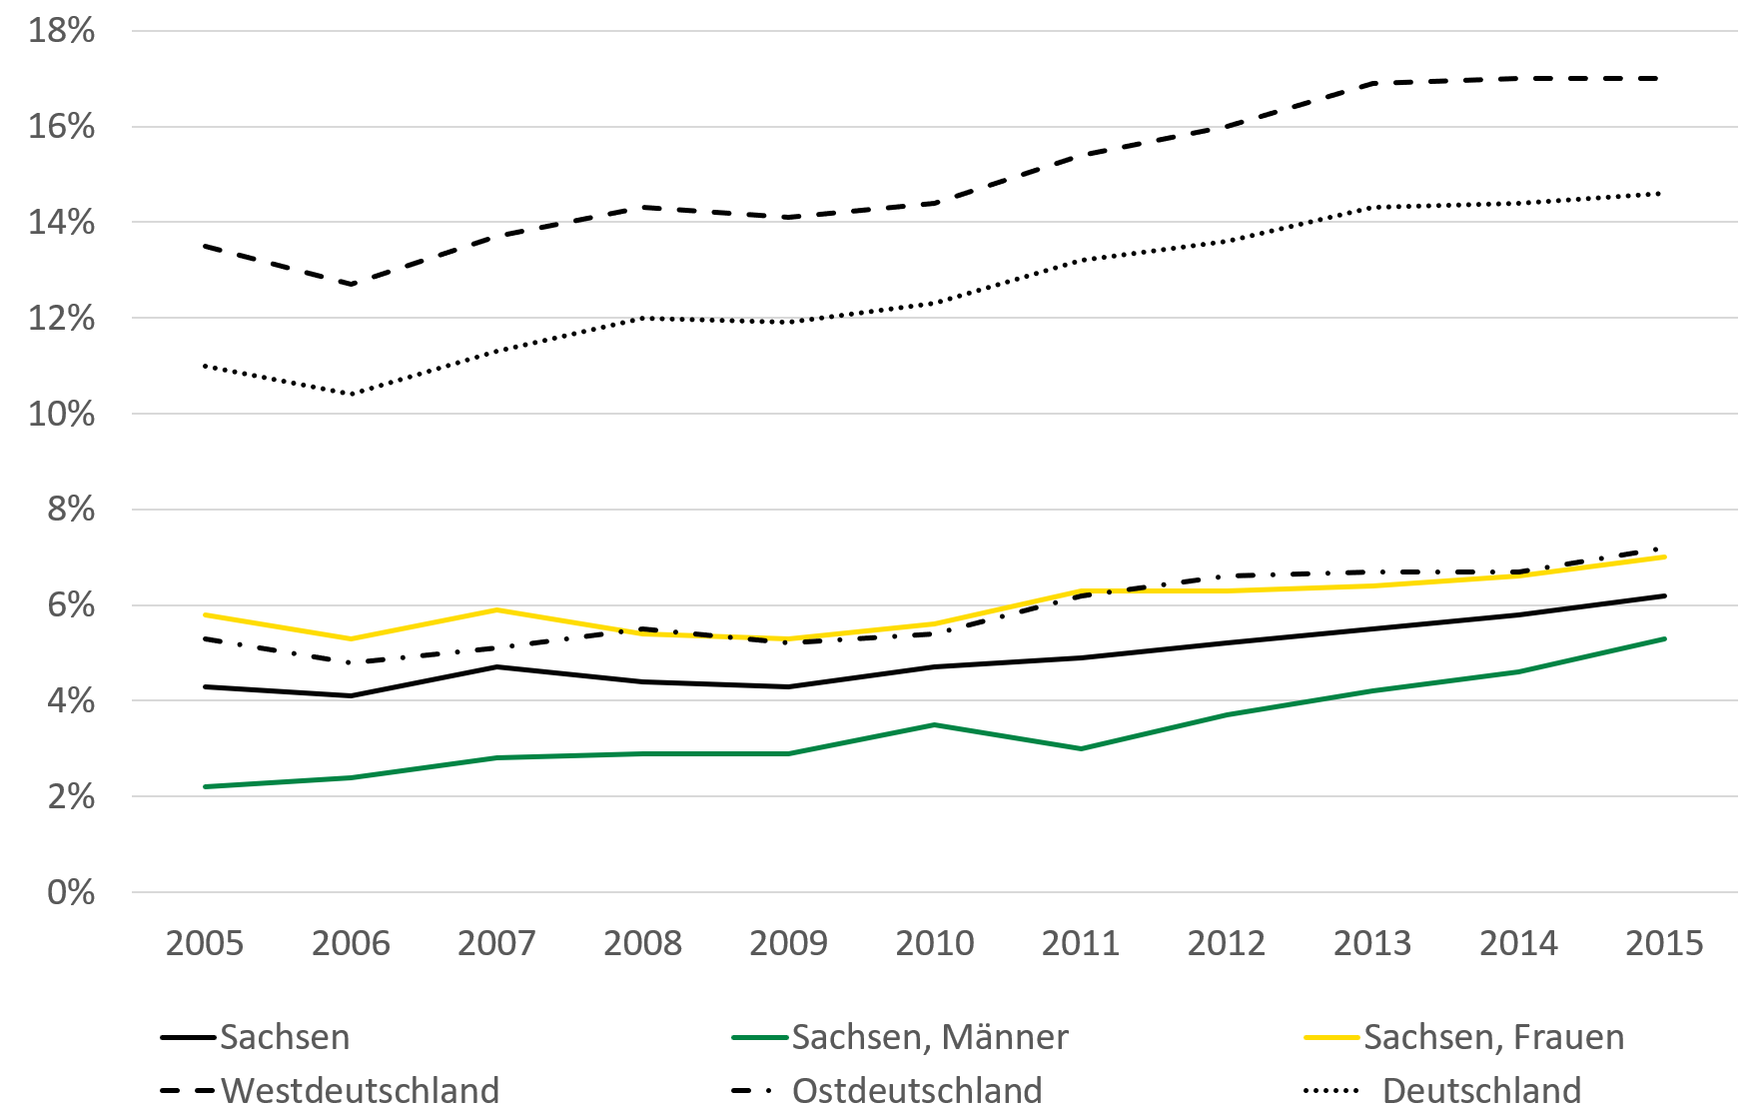 Die höchste Armutsgefährdungsquote weist Westdeutschland auf mit 17 Prozent in 2015. Deutschland hat eine Armutsgefährdungsquote von über 14 Prozent, Sachsen von 6 Prozent. Die Armutsgefährdungsquoten sind bundesweit von 2005 bis 2015 gestiegen.